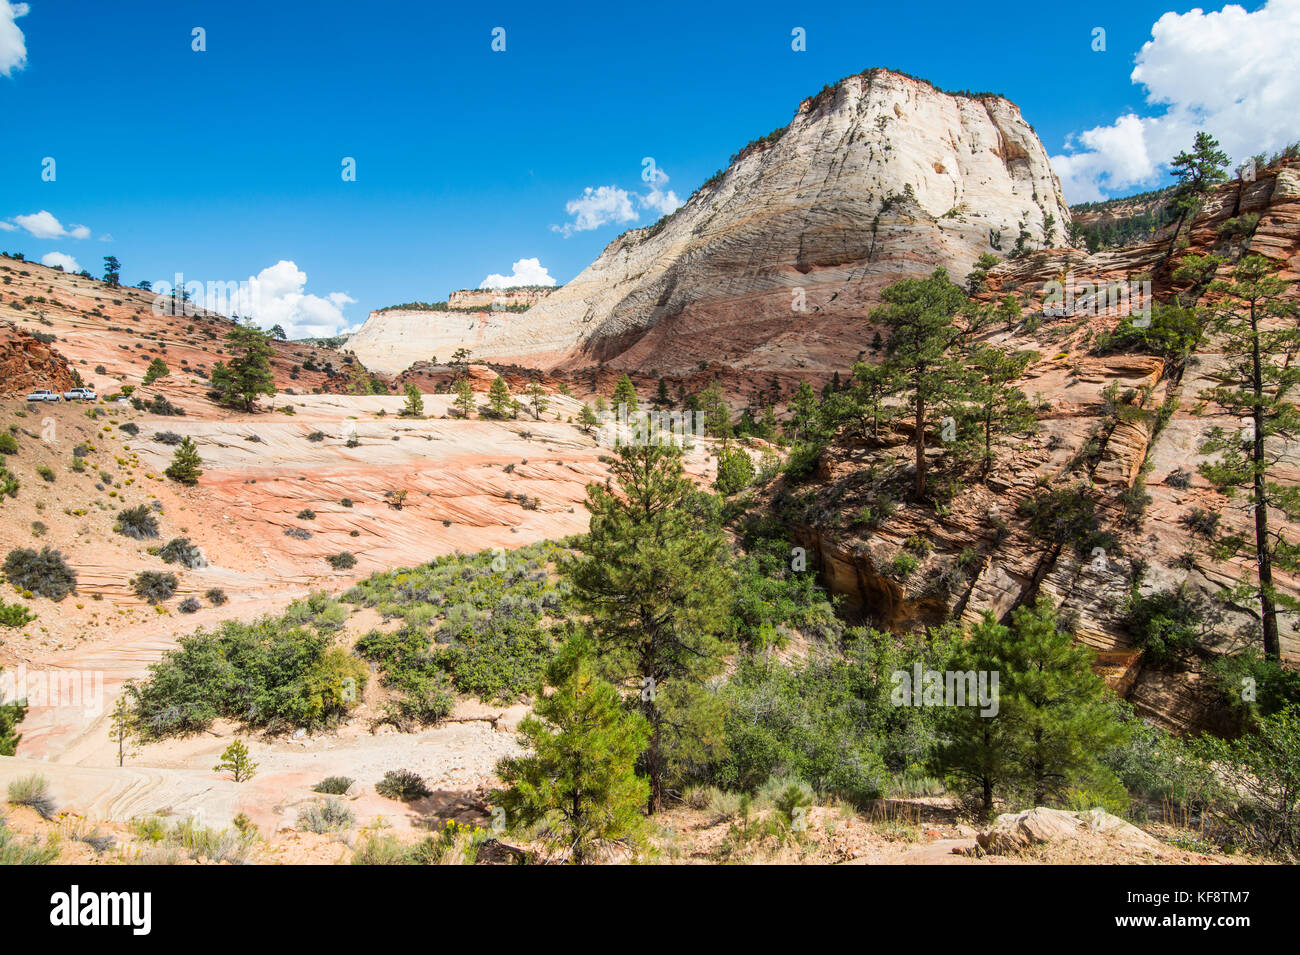 Sandstone rocks in the Zion National Park, Utah, USA Stock Photo